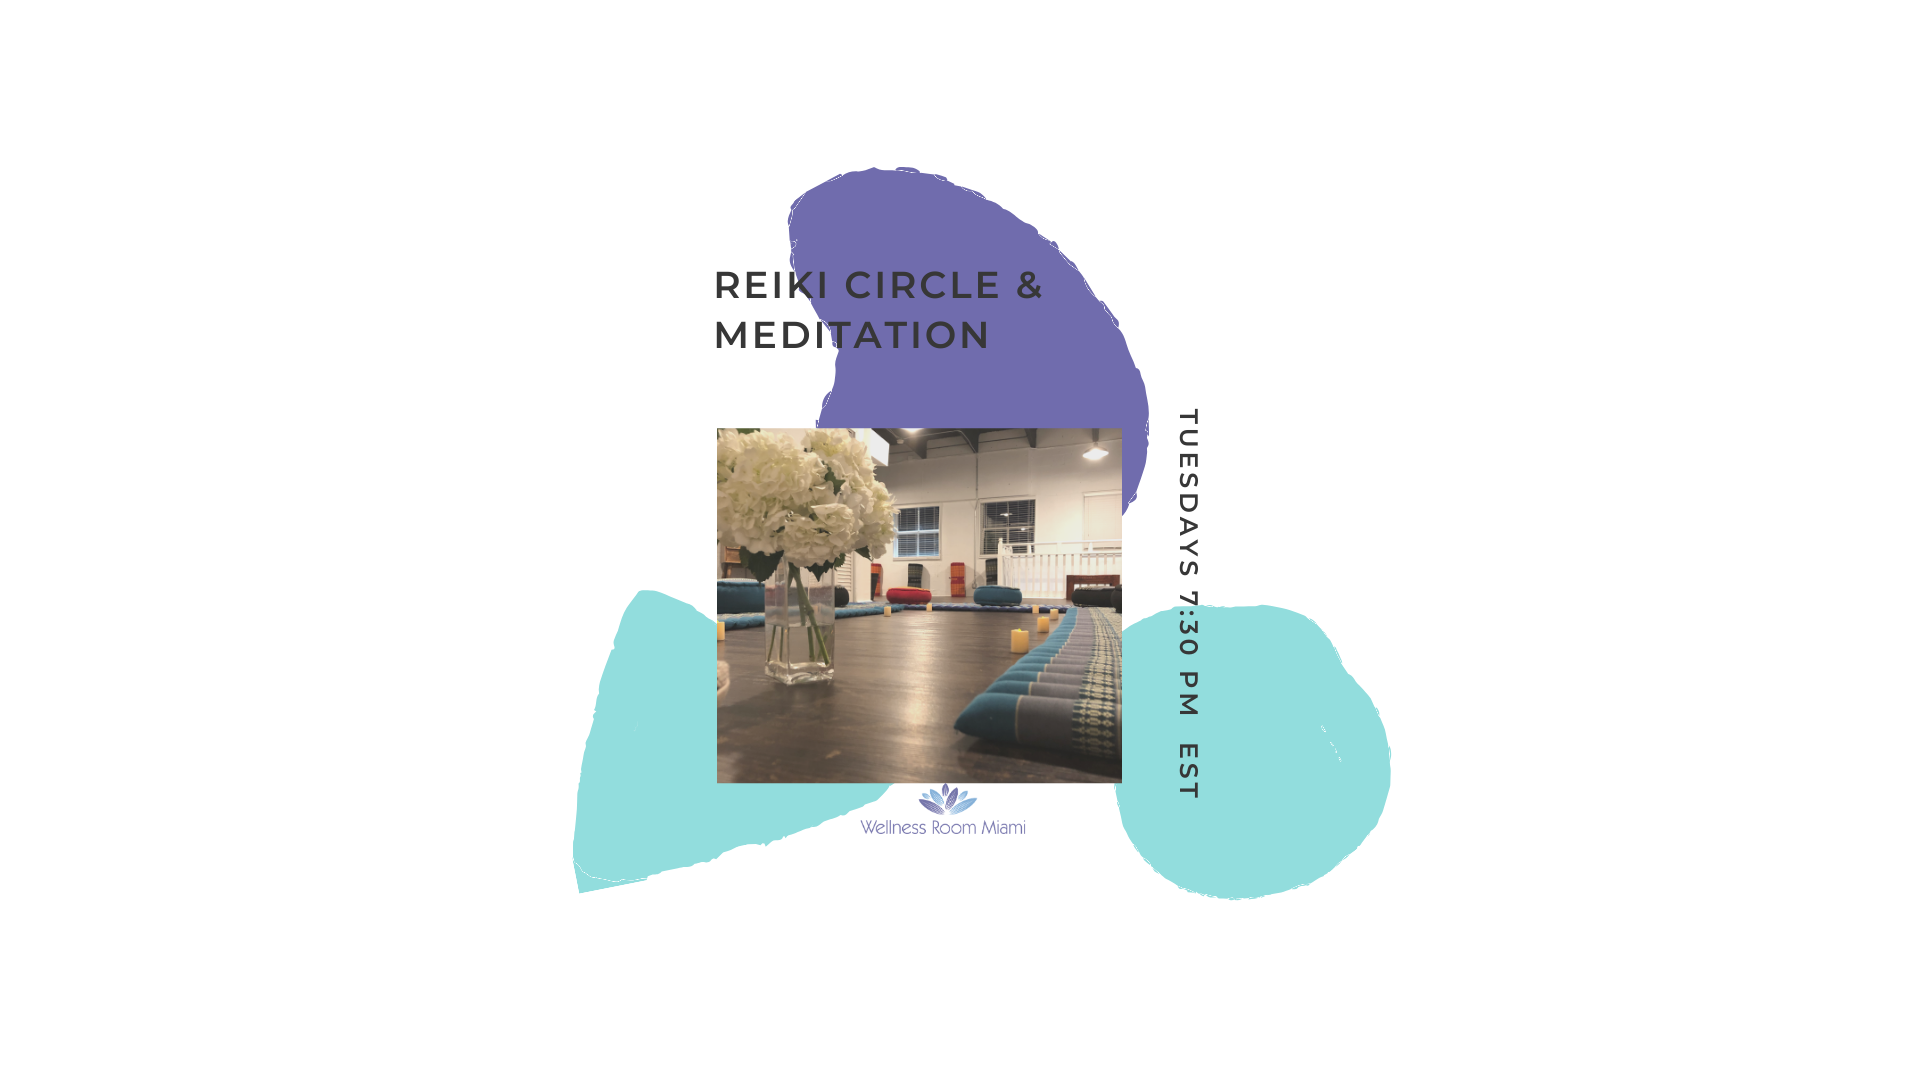 REIKI CIRCLE and MEDITATION